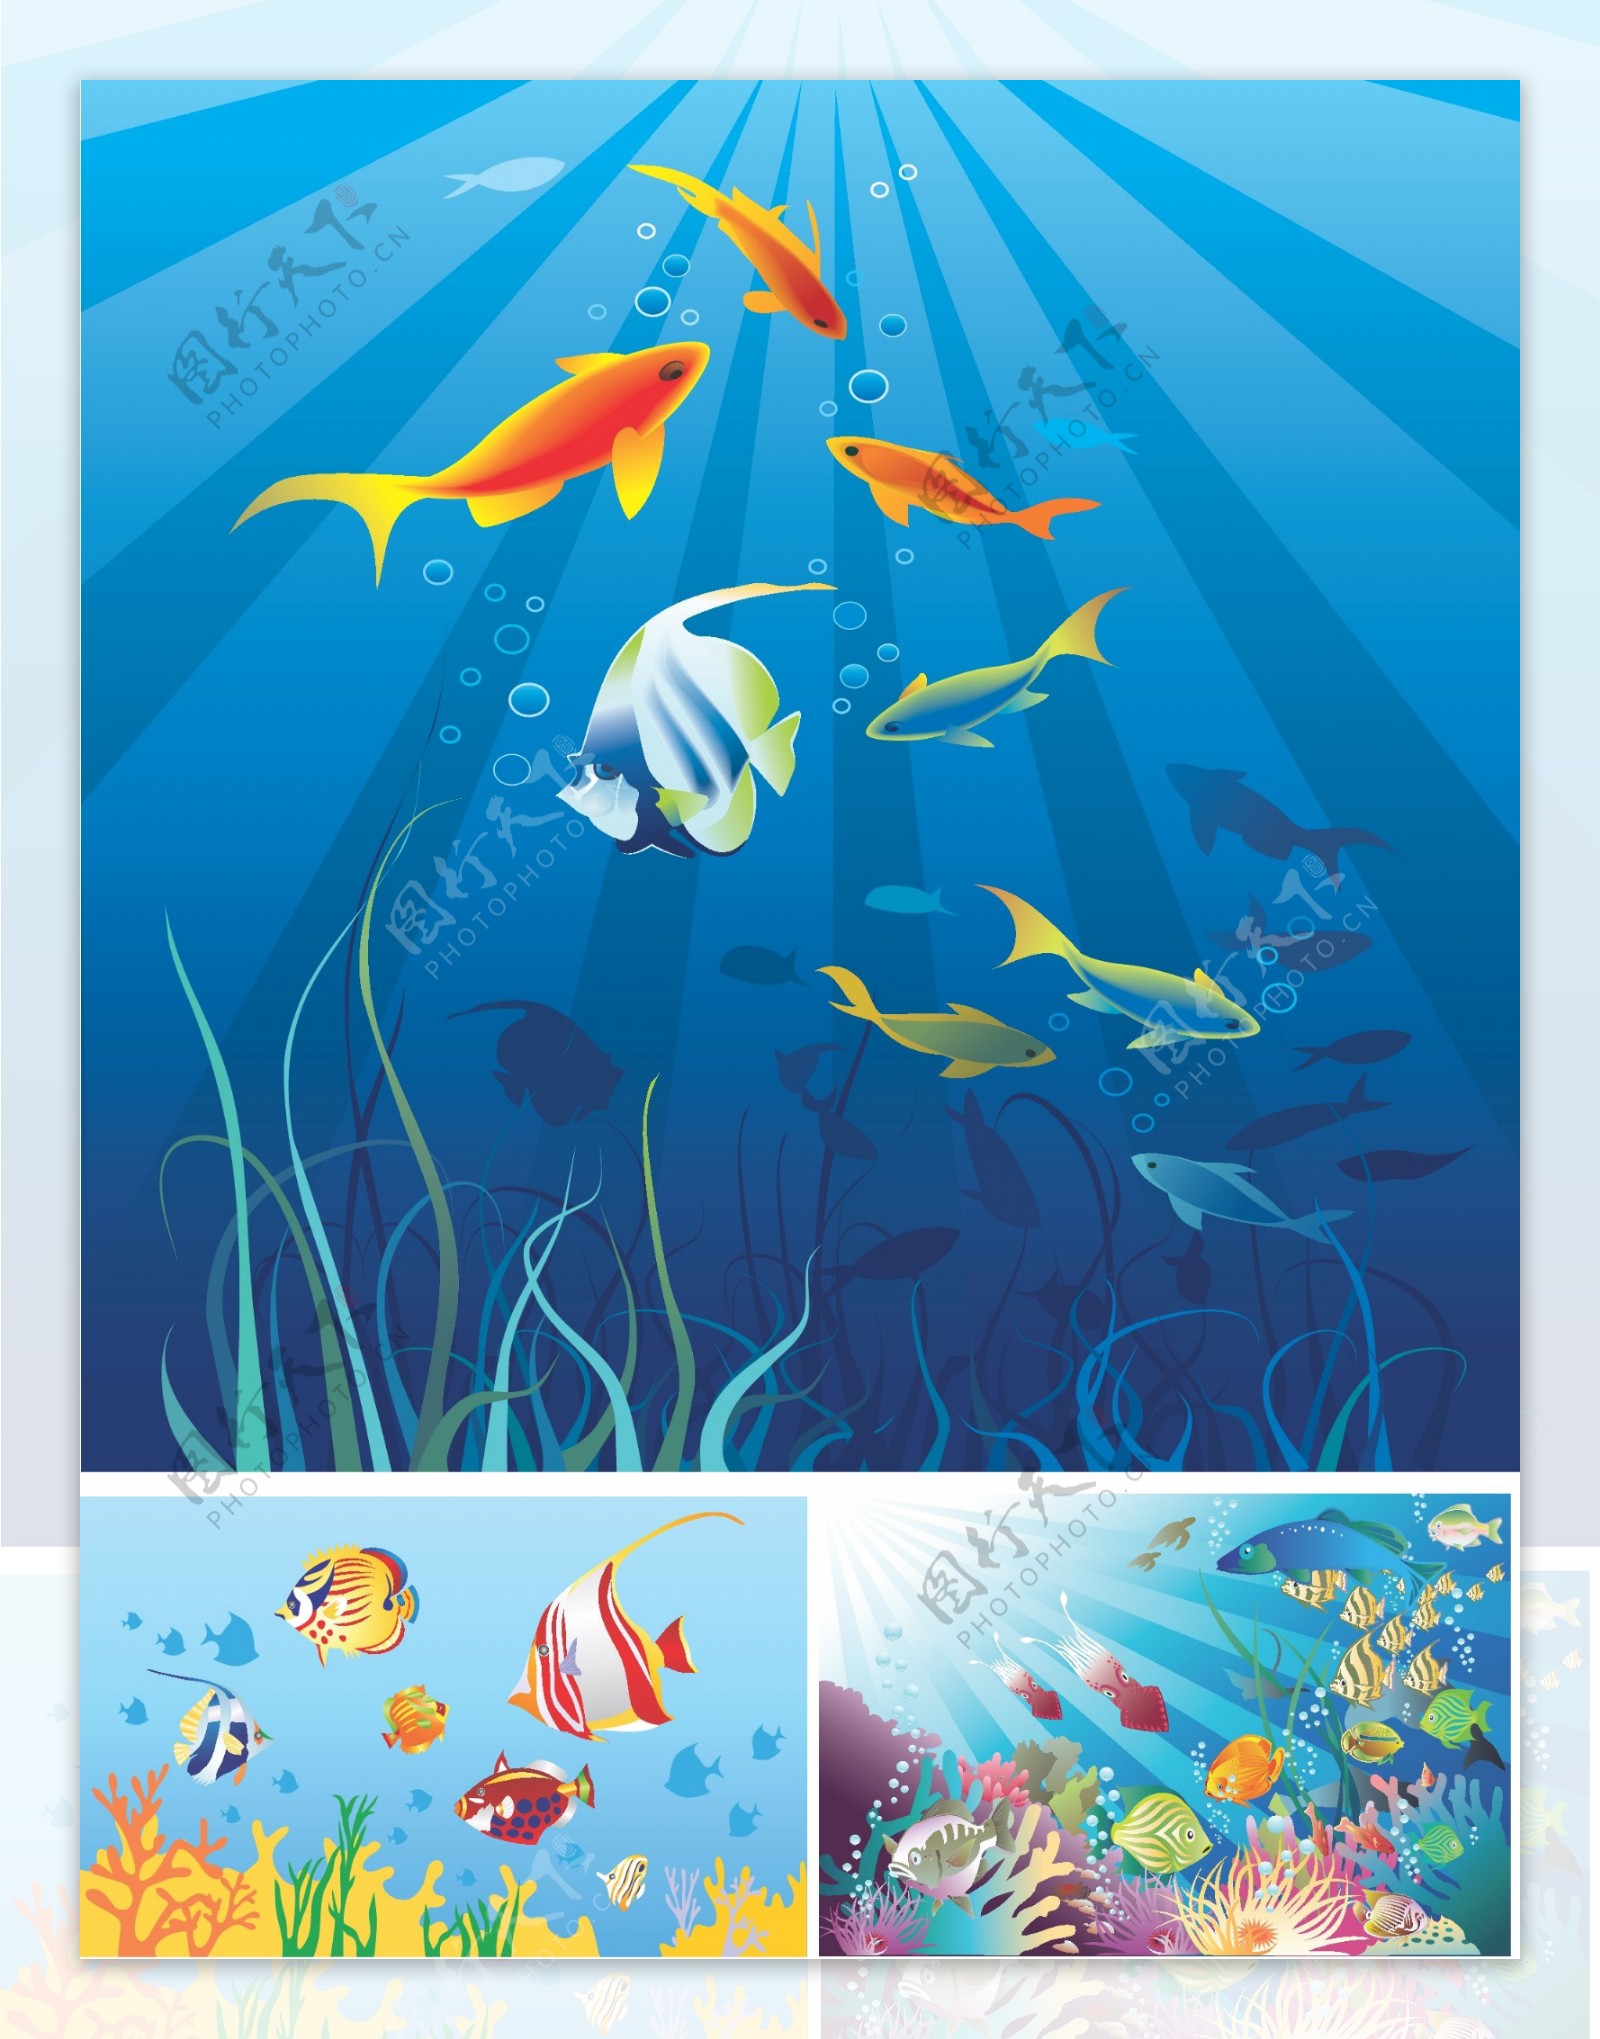 简单的矢量图形插画的海底世界